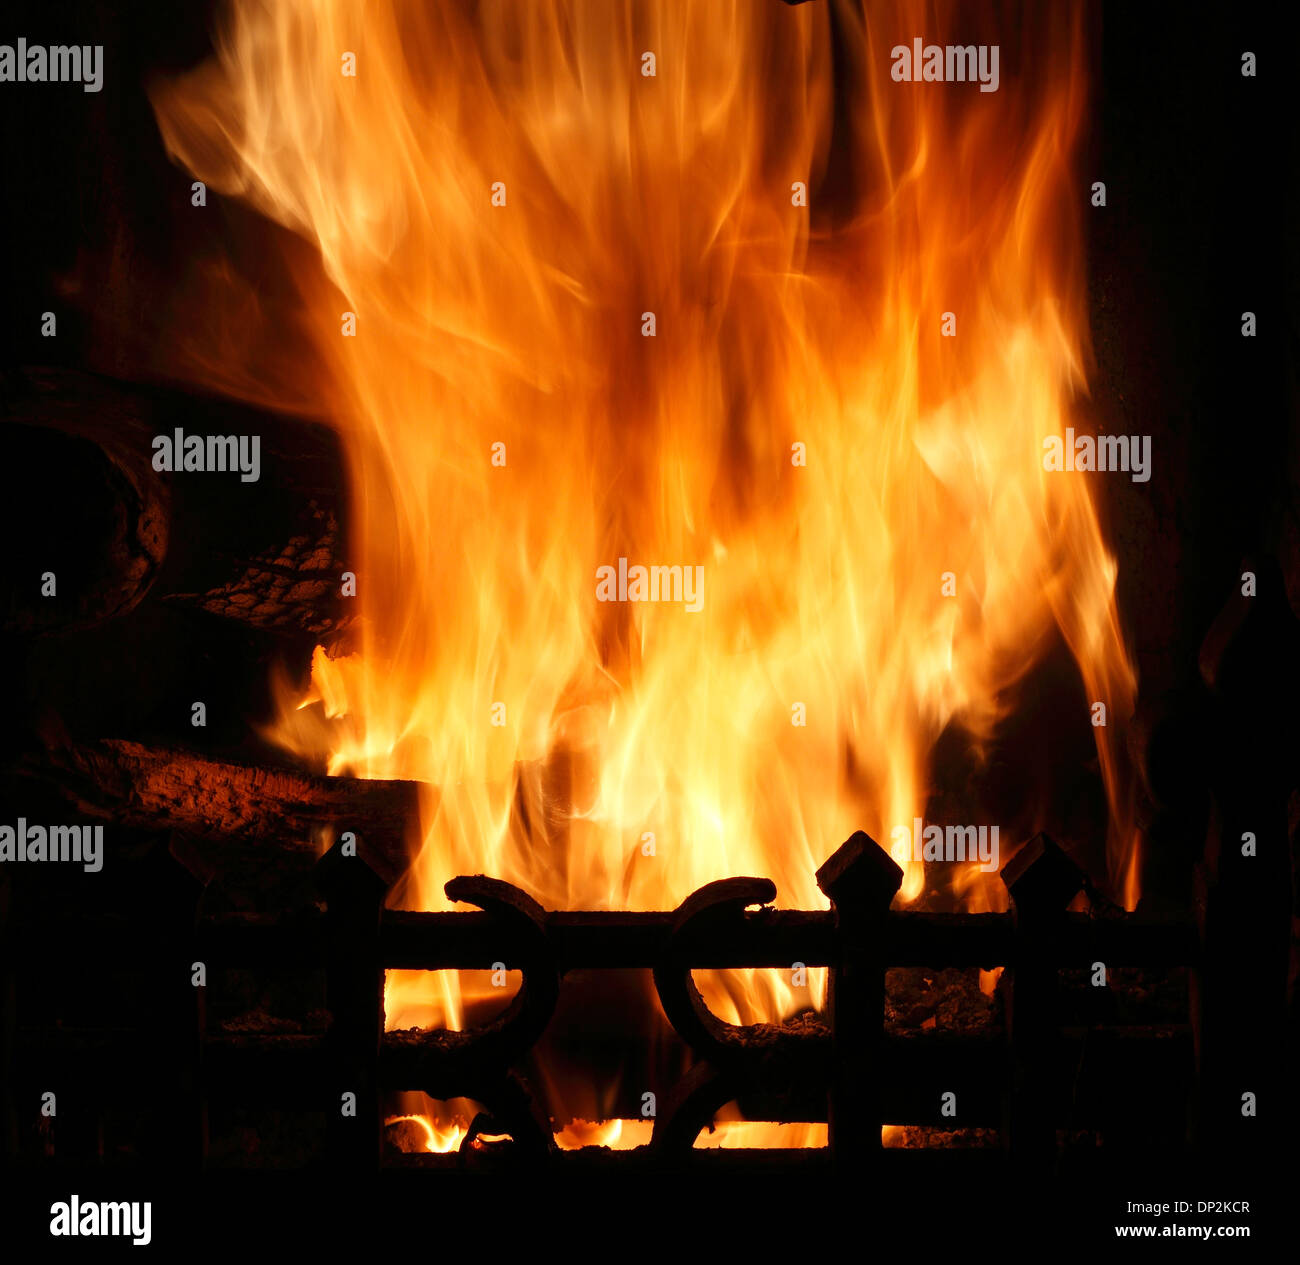 Fuego en el hogar, el calor de las llamas llama Calefacción chimenea Rejilla incendios calor quemando carbón de leña incendios caseros Foto de stock